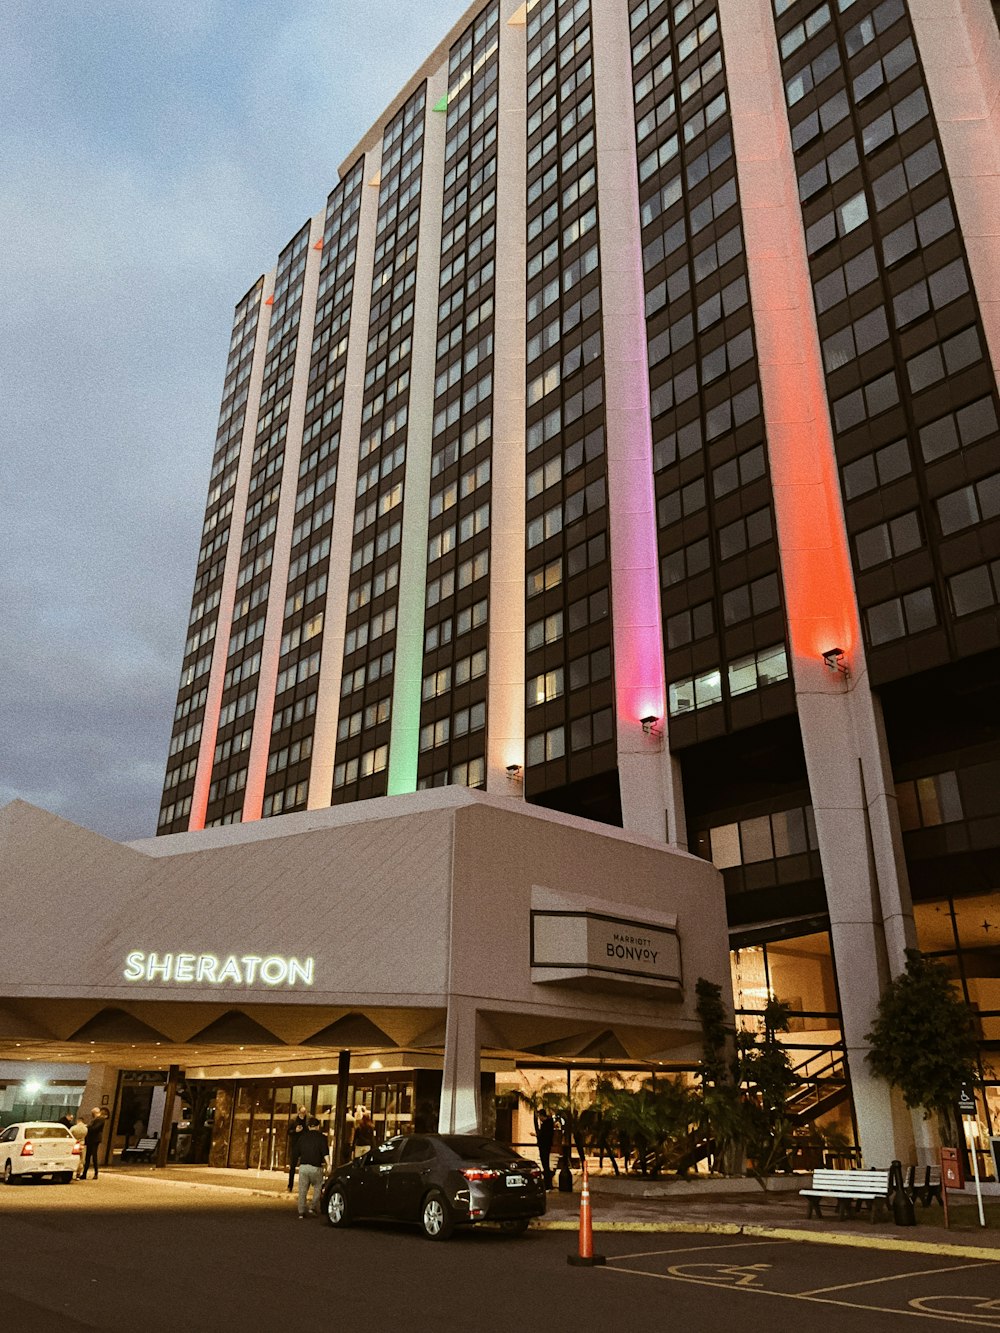 Lo Sheraton Hotel è illuminato con i colori dell'arcobaleno